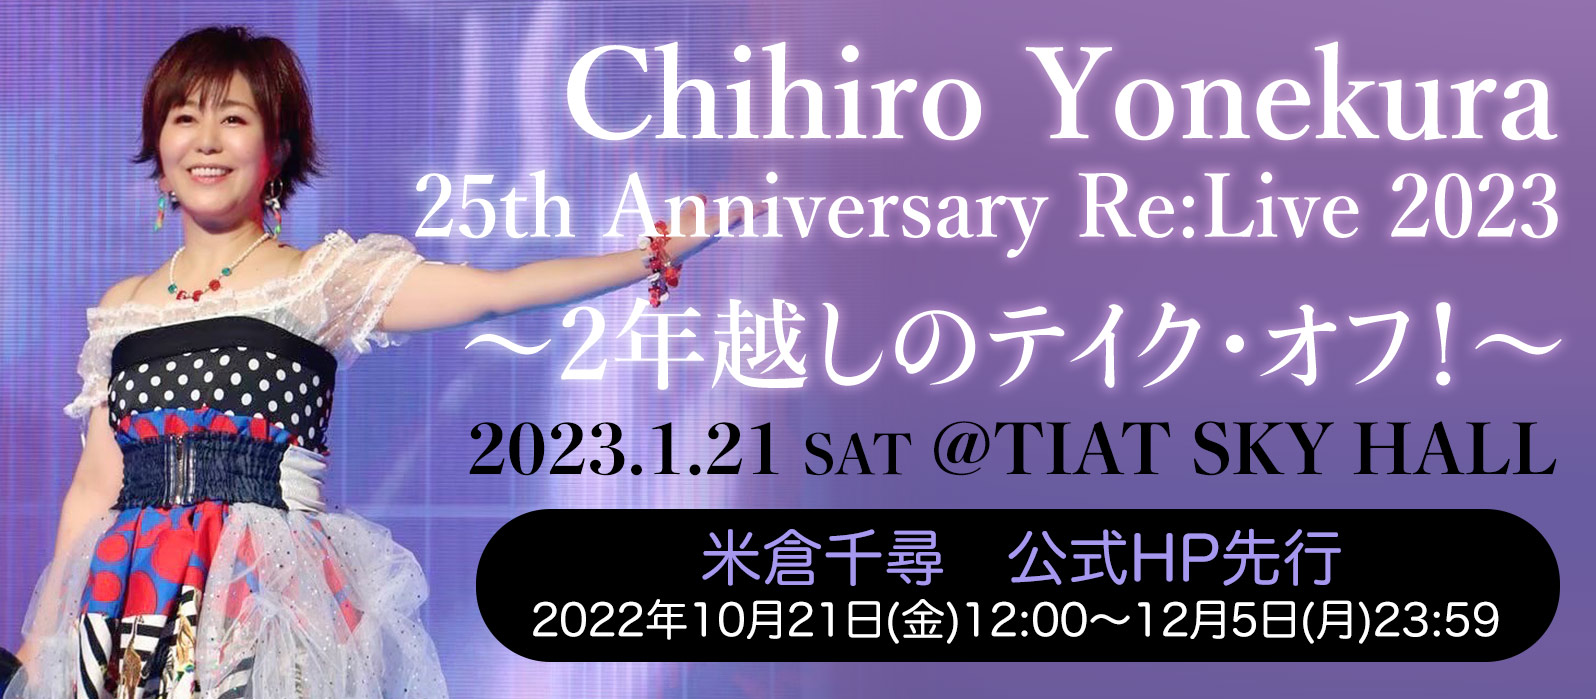 Chihiro Yonekura 25th Anniversary Re:Live 2023〜2年越しのテイク・オフ！〜